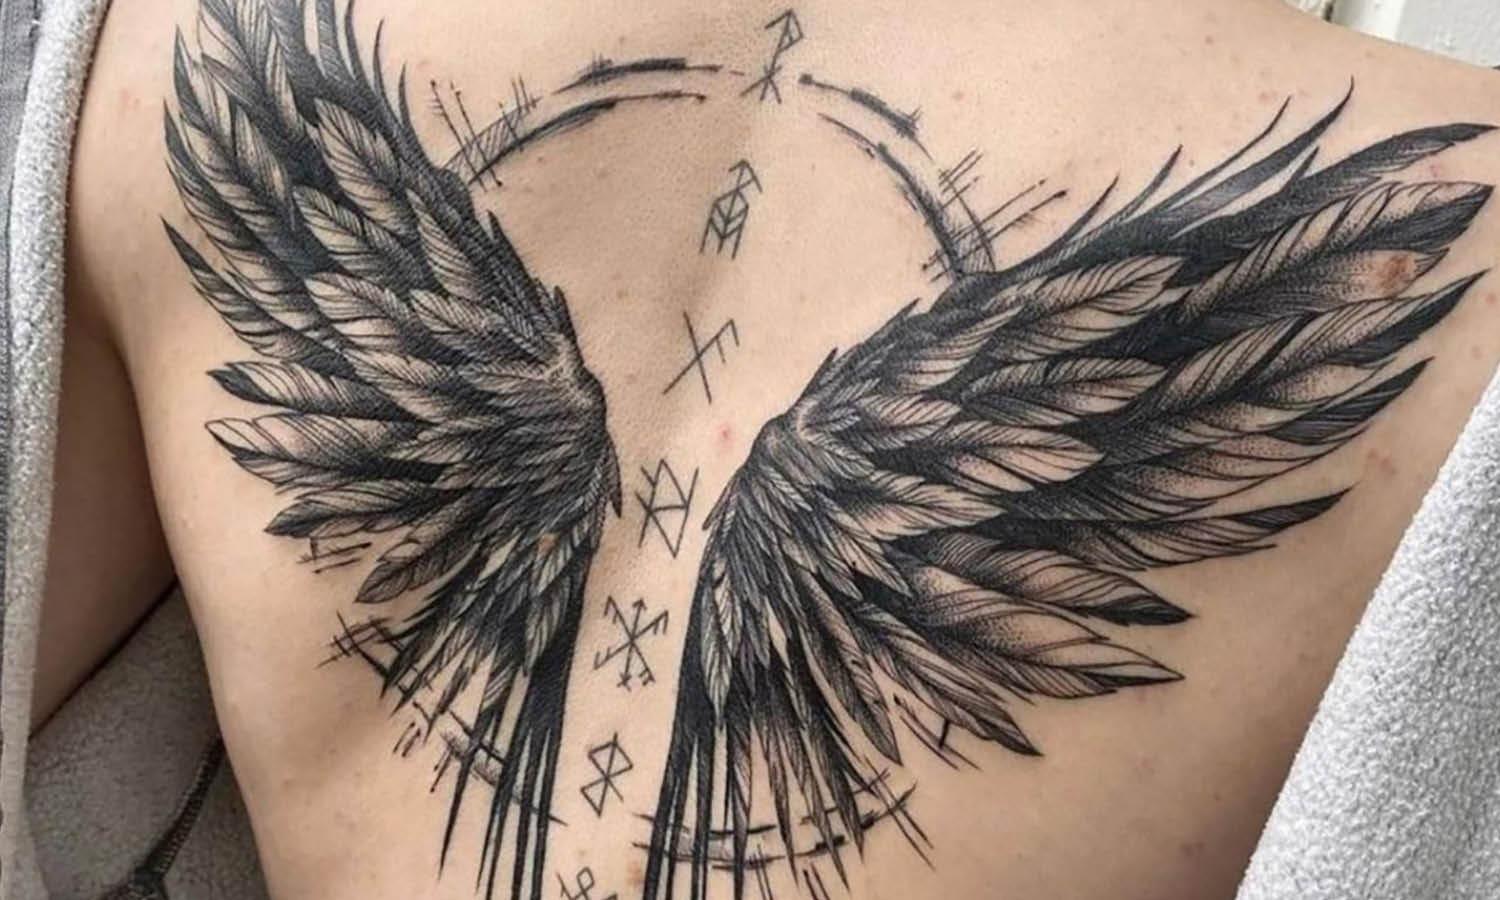 Tattoo Studio Shop Flash Single w/ Line Work Cross, Heart, Wings 11